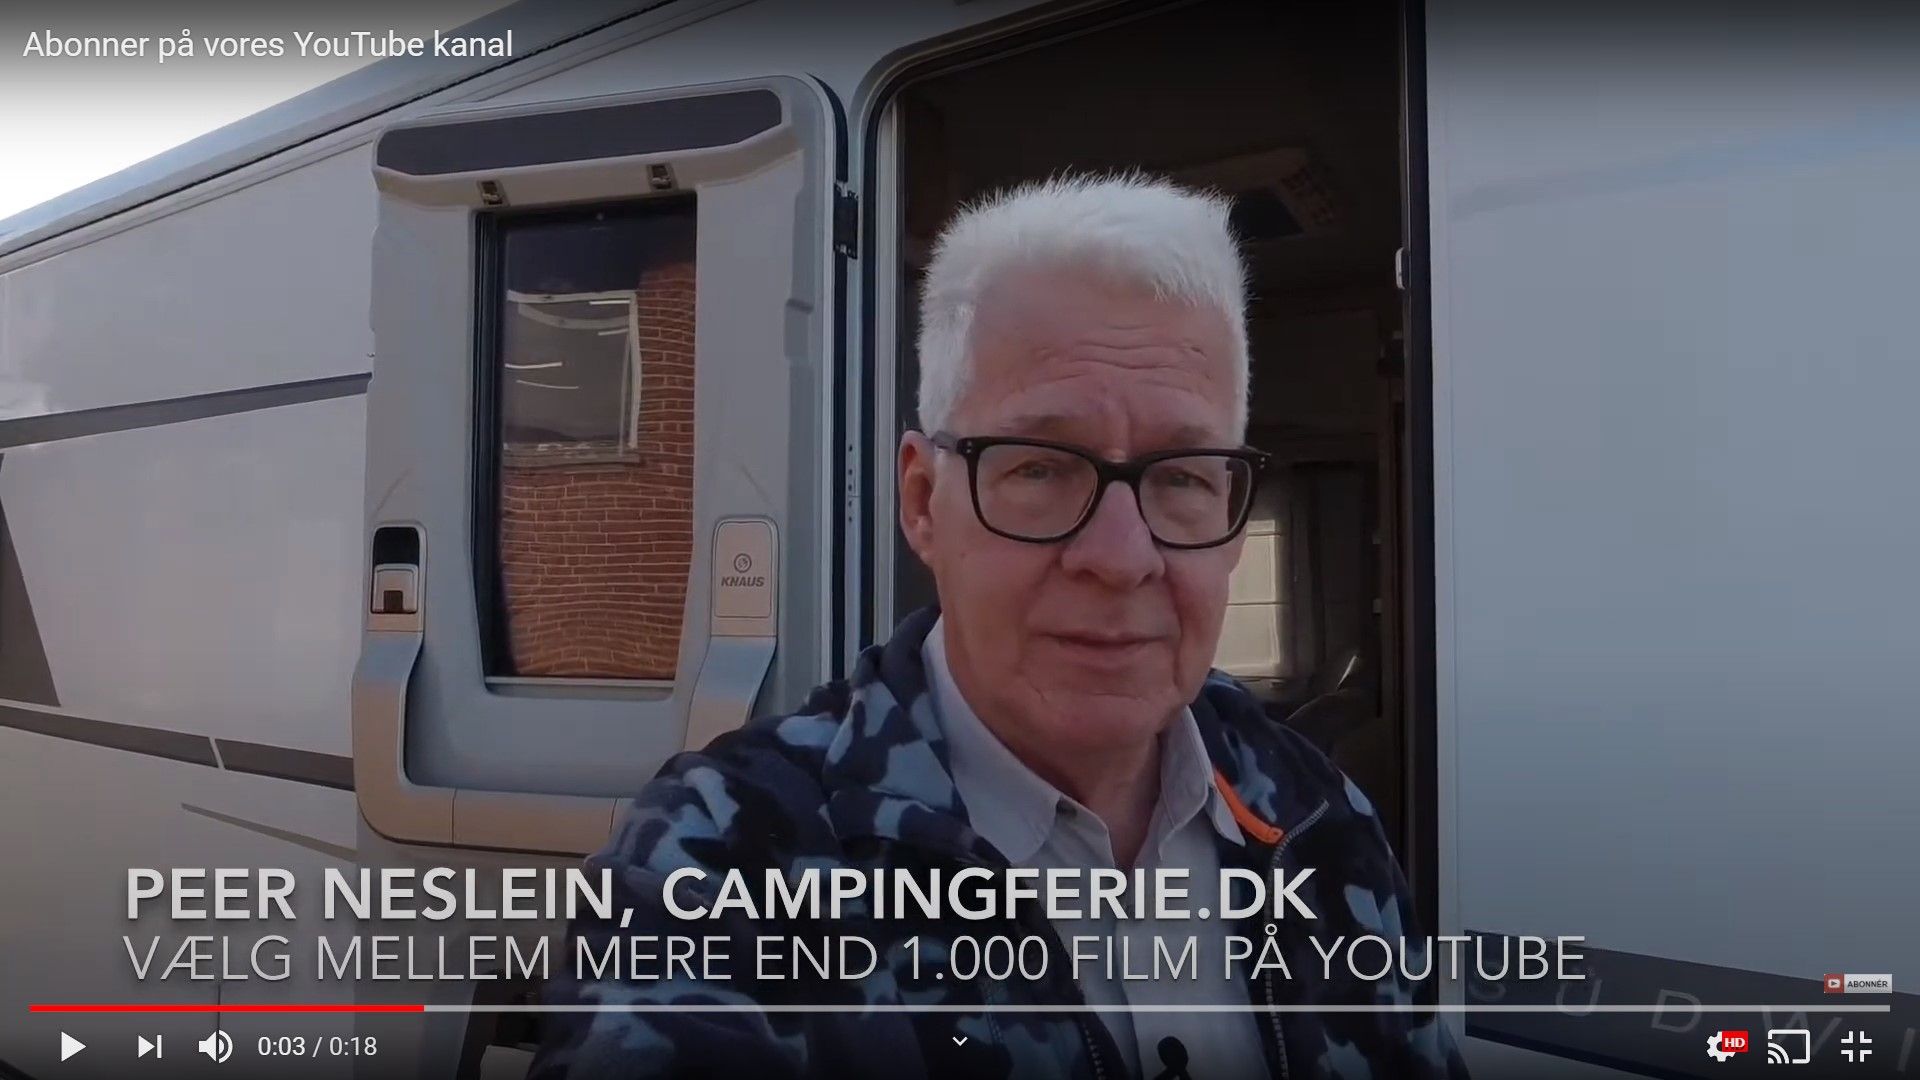 Få automatisk besked når Campingferie.dk har lavet en ny film